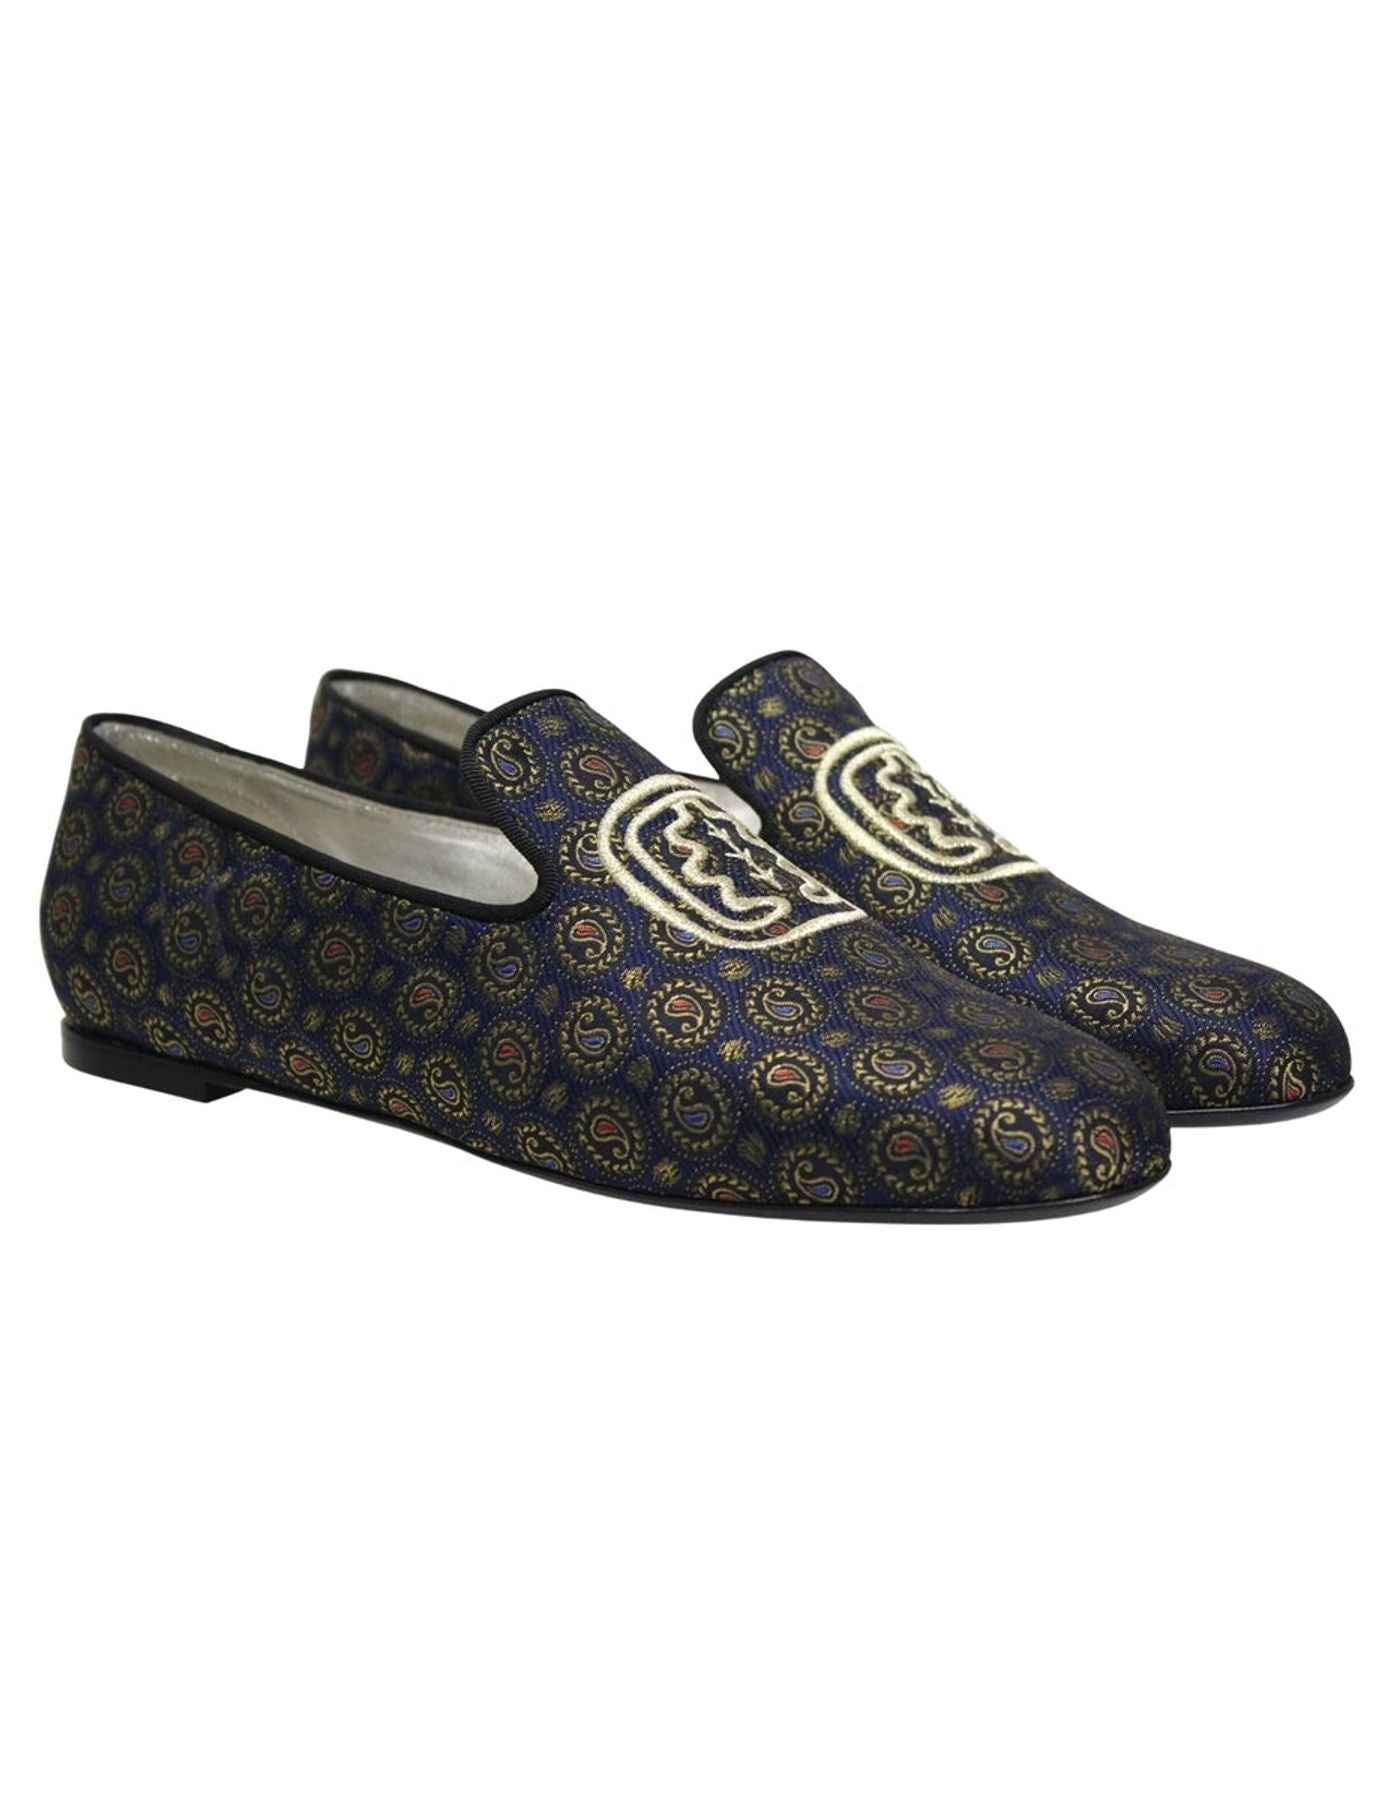 slippers-brodes-bleu-et-or